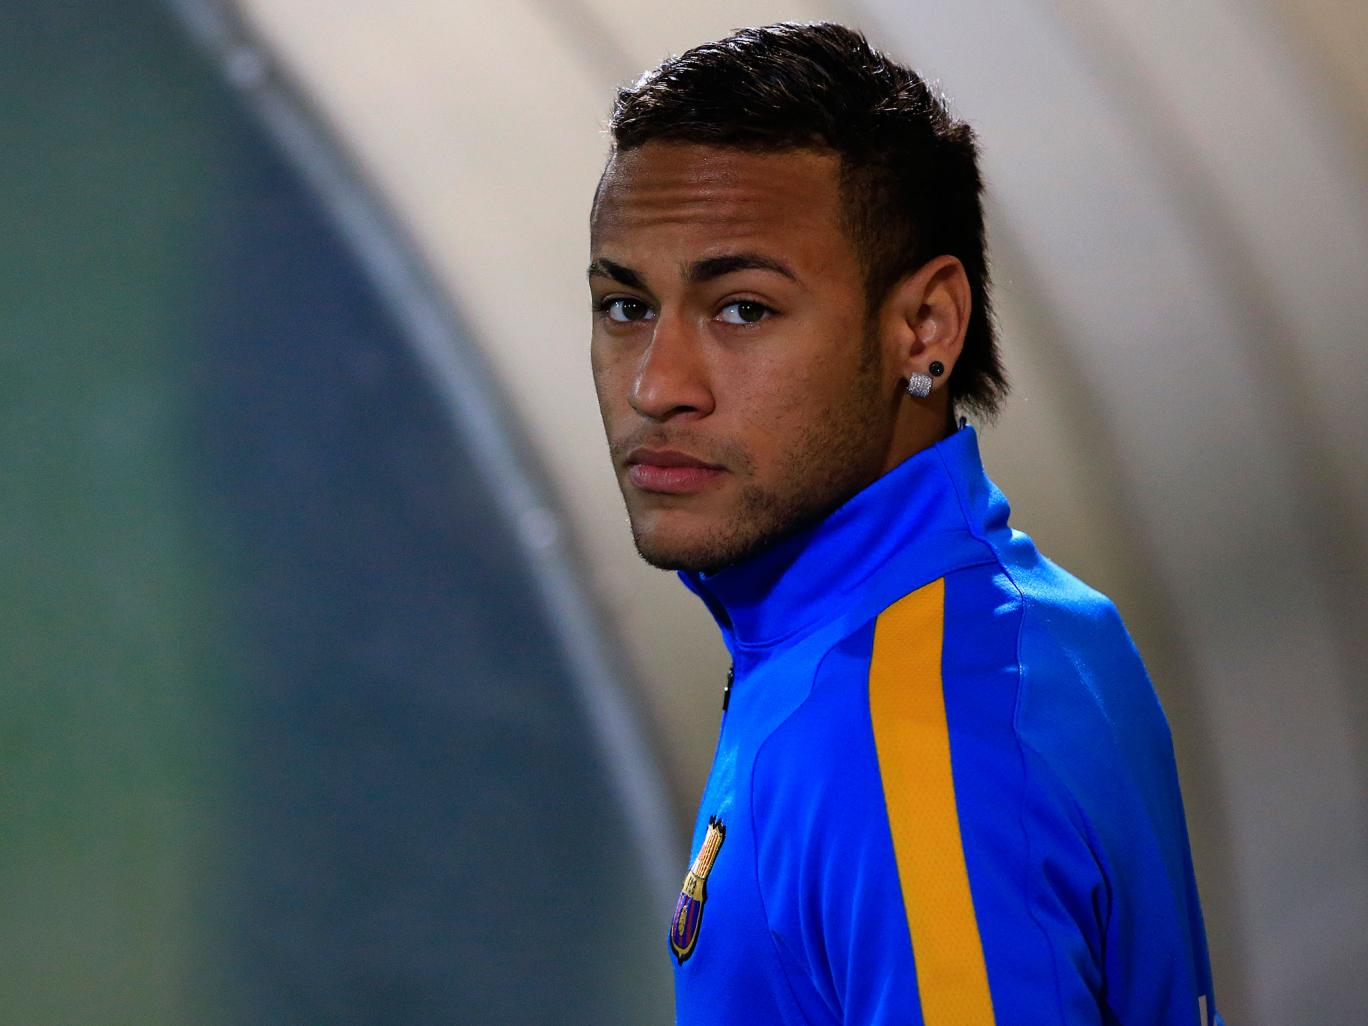 short biography about neymar